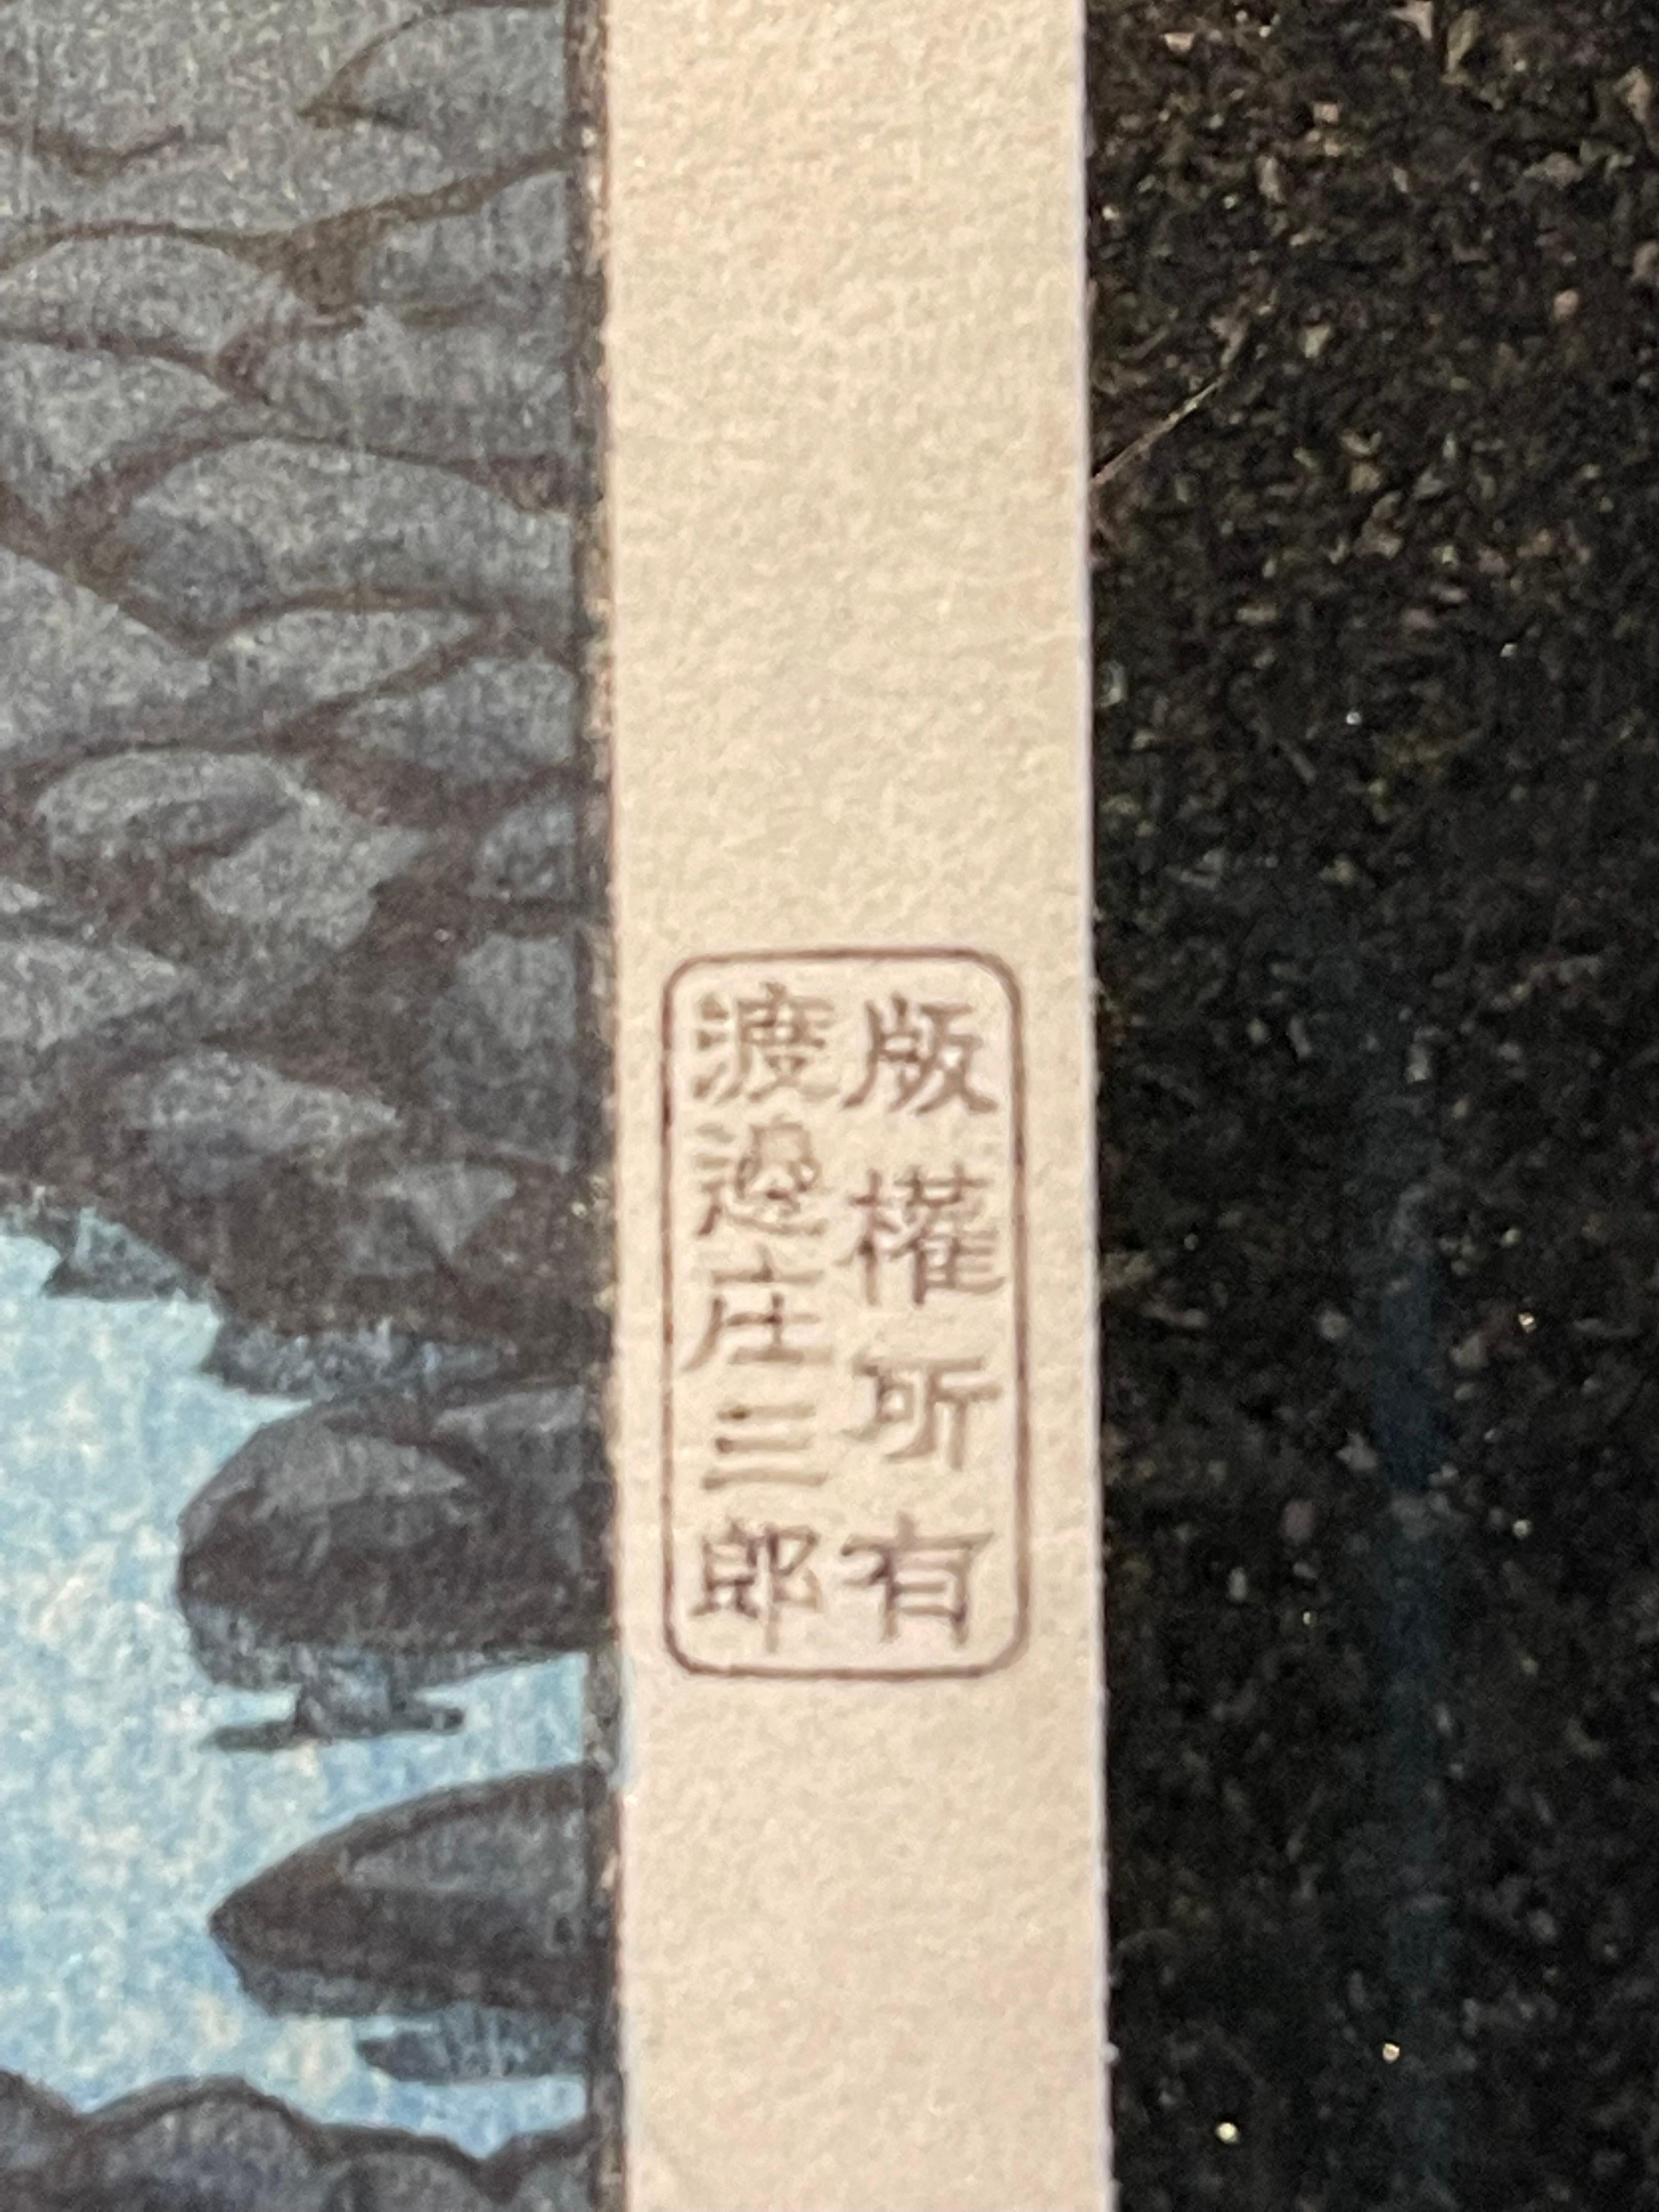 Kawase Hasui (1883-1957) 
Époque Showa (1926-1989), daté de 1929 
Une estampe oban tate-e, titrée dans la marge gauche Beppu no yu (Soirée à Beppu) de la série Tabi miyage dai sanshu (Souvenirs de voyage, troisième série), représentant une scène